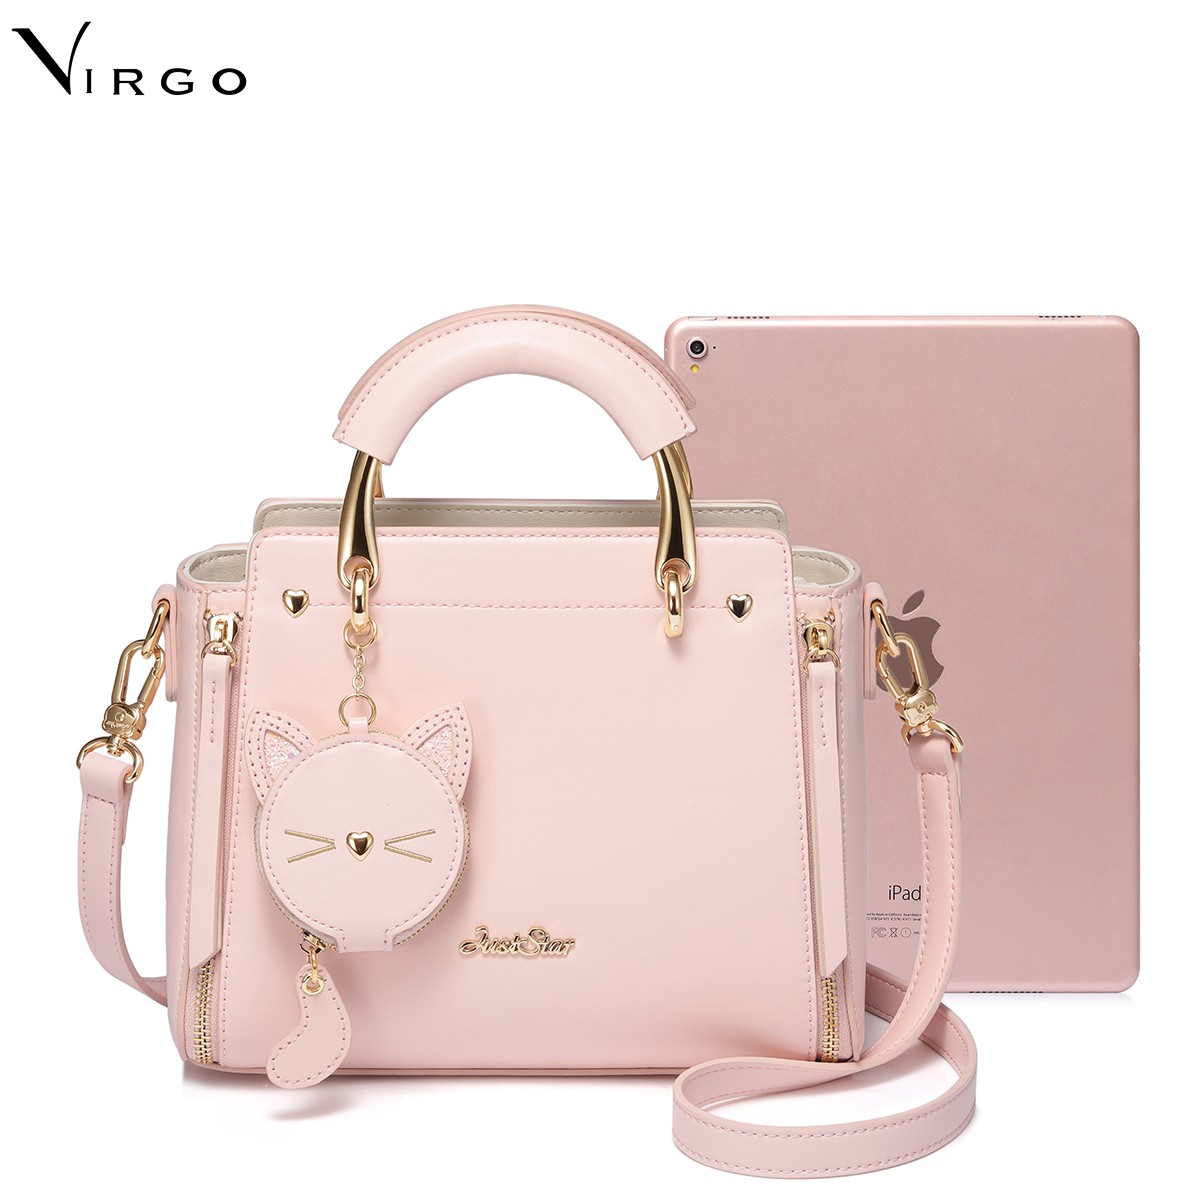 Túi xách nữ thời trang Just Star Virgo VG521